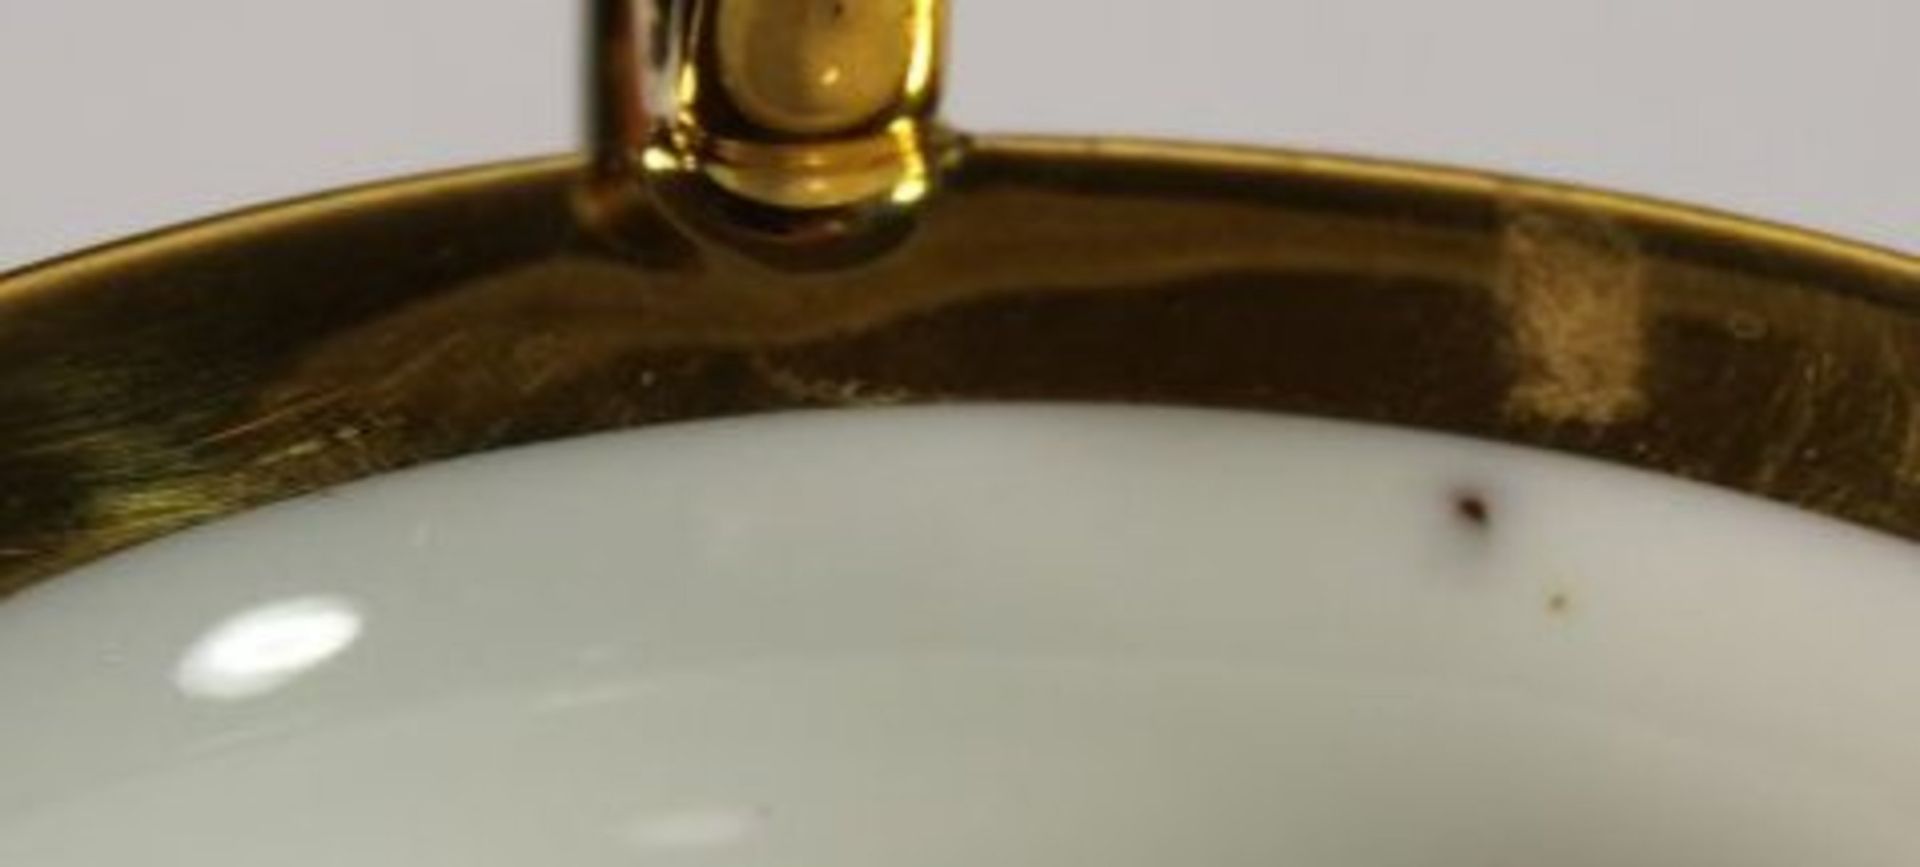 3tlg. Kaffeegedeck, Fürstenberg, weiss/rot/gold, Tasse H-8cm. - Image 6 of 6